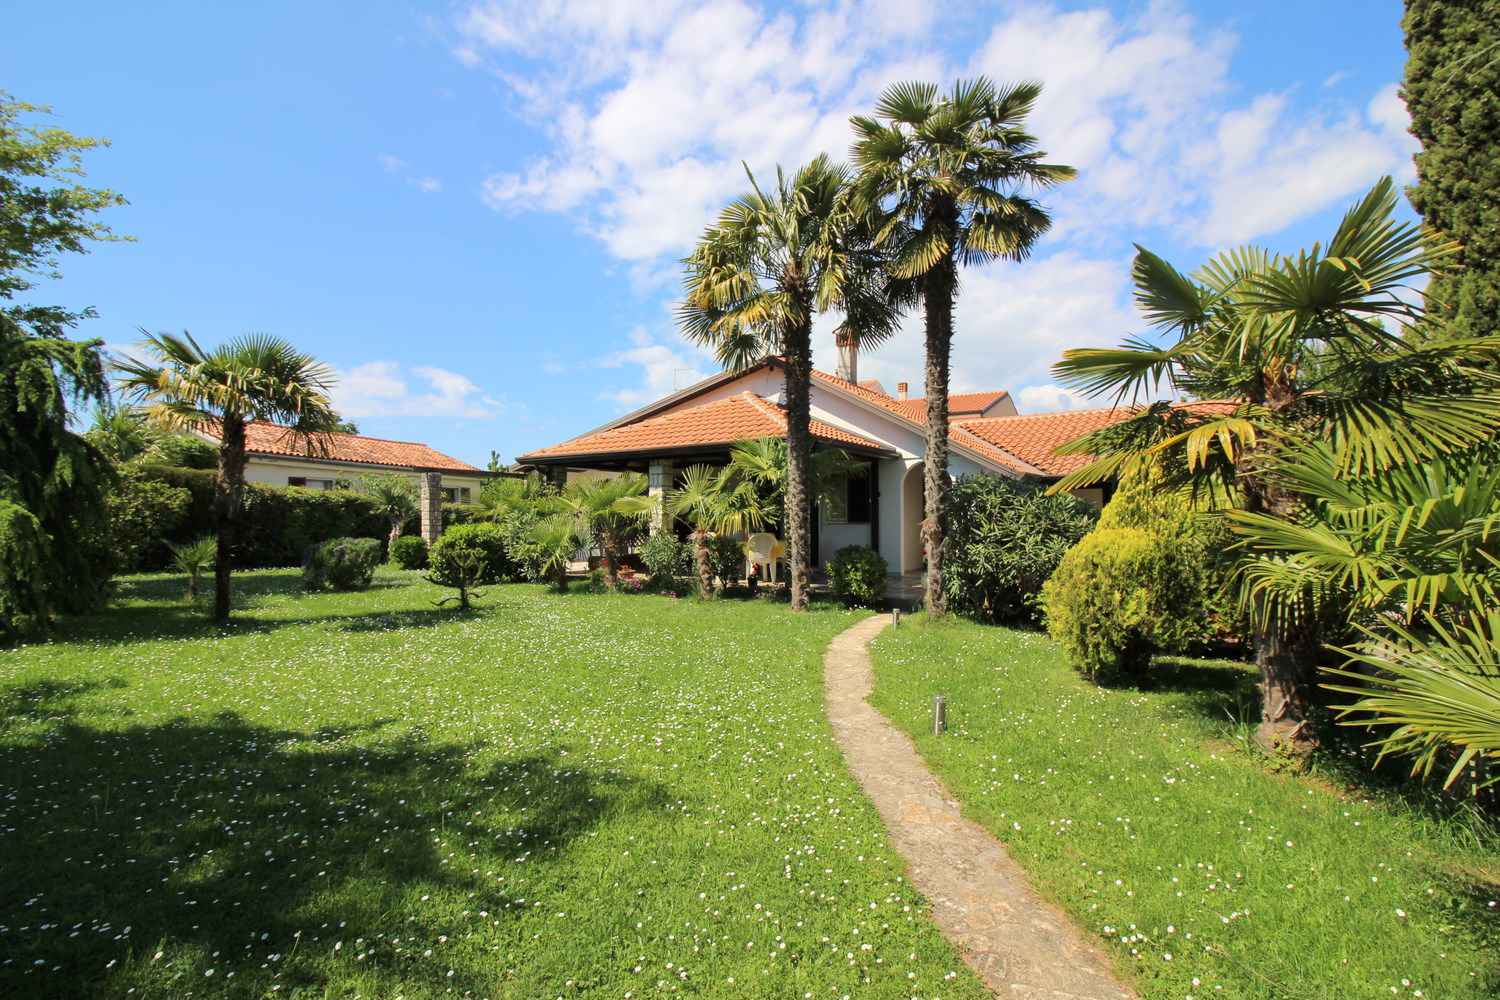 Bungalow mit schönem Garten und Klimaanlage Ferienhaus in Kroatien